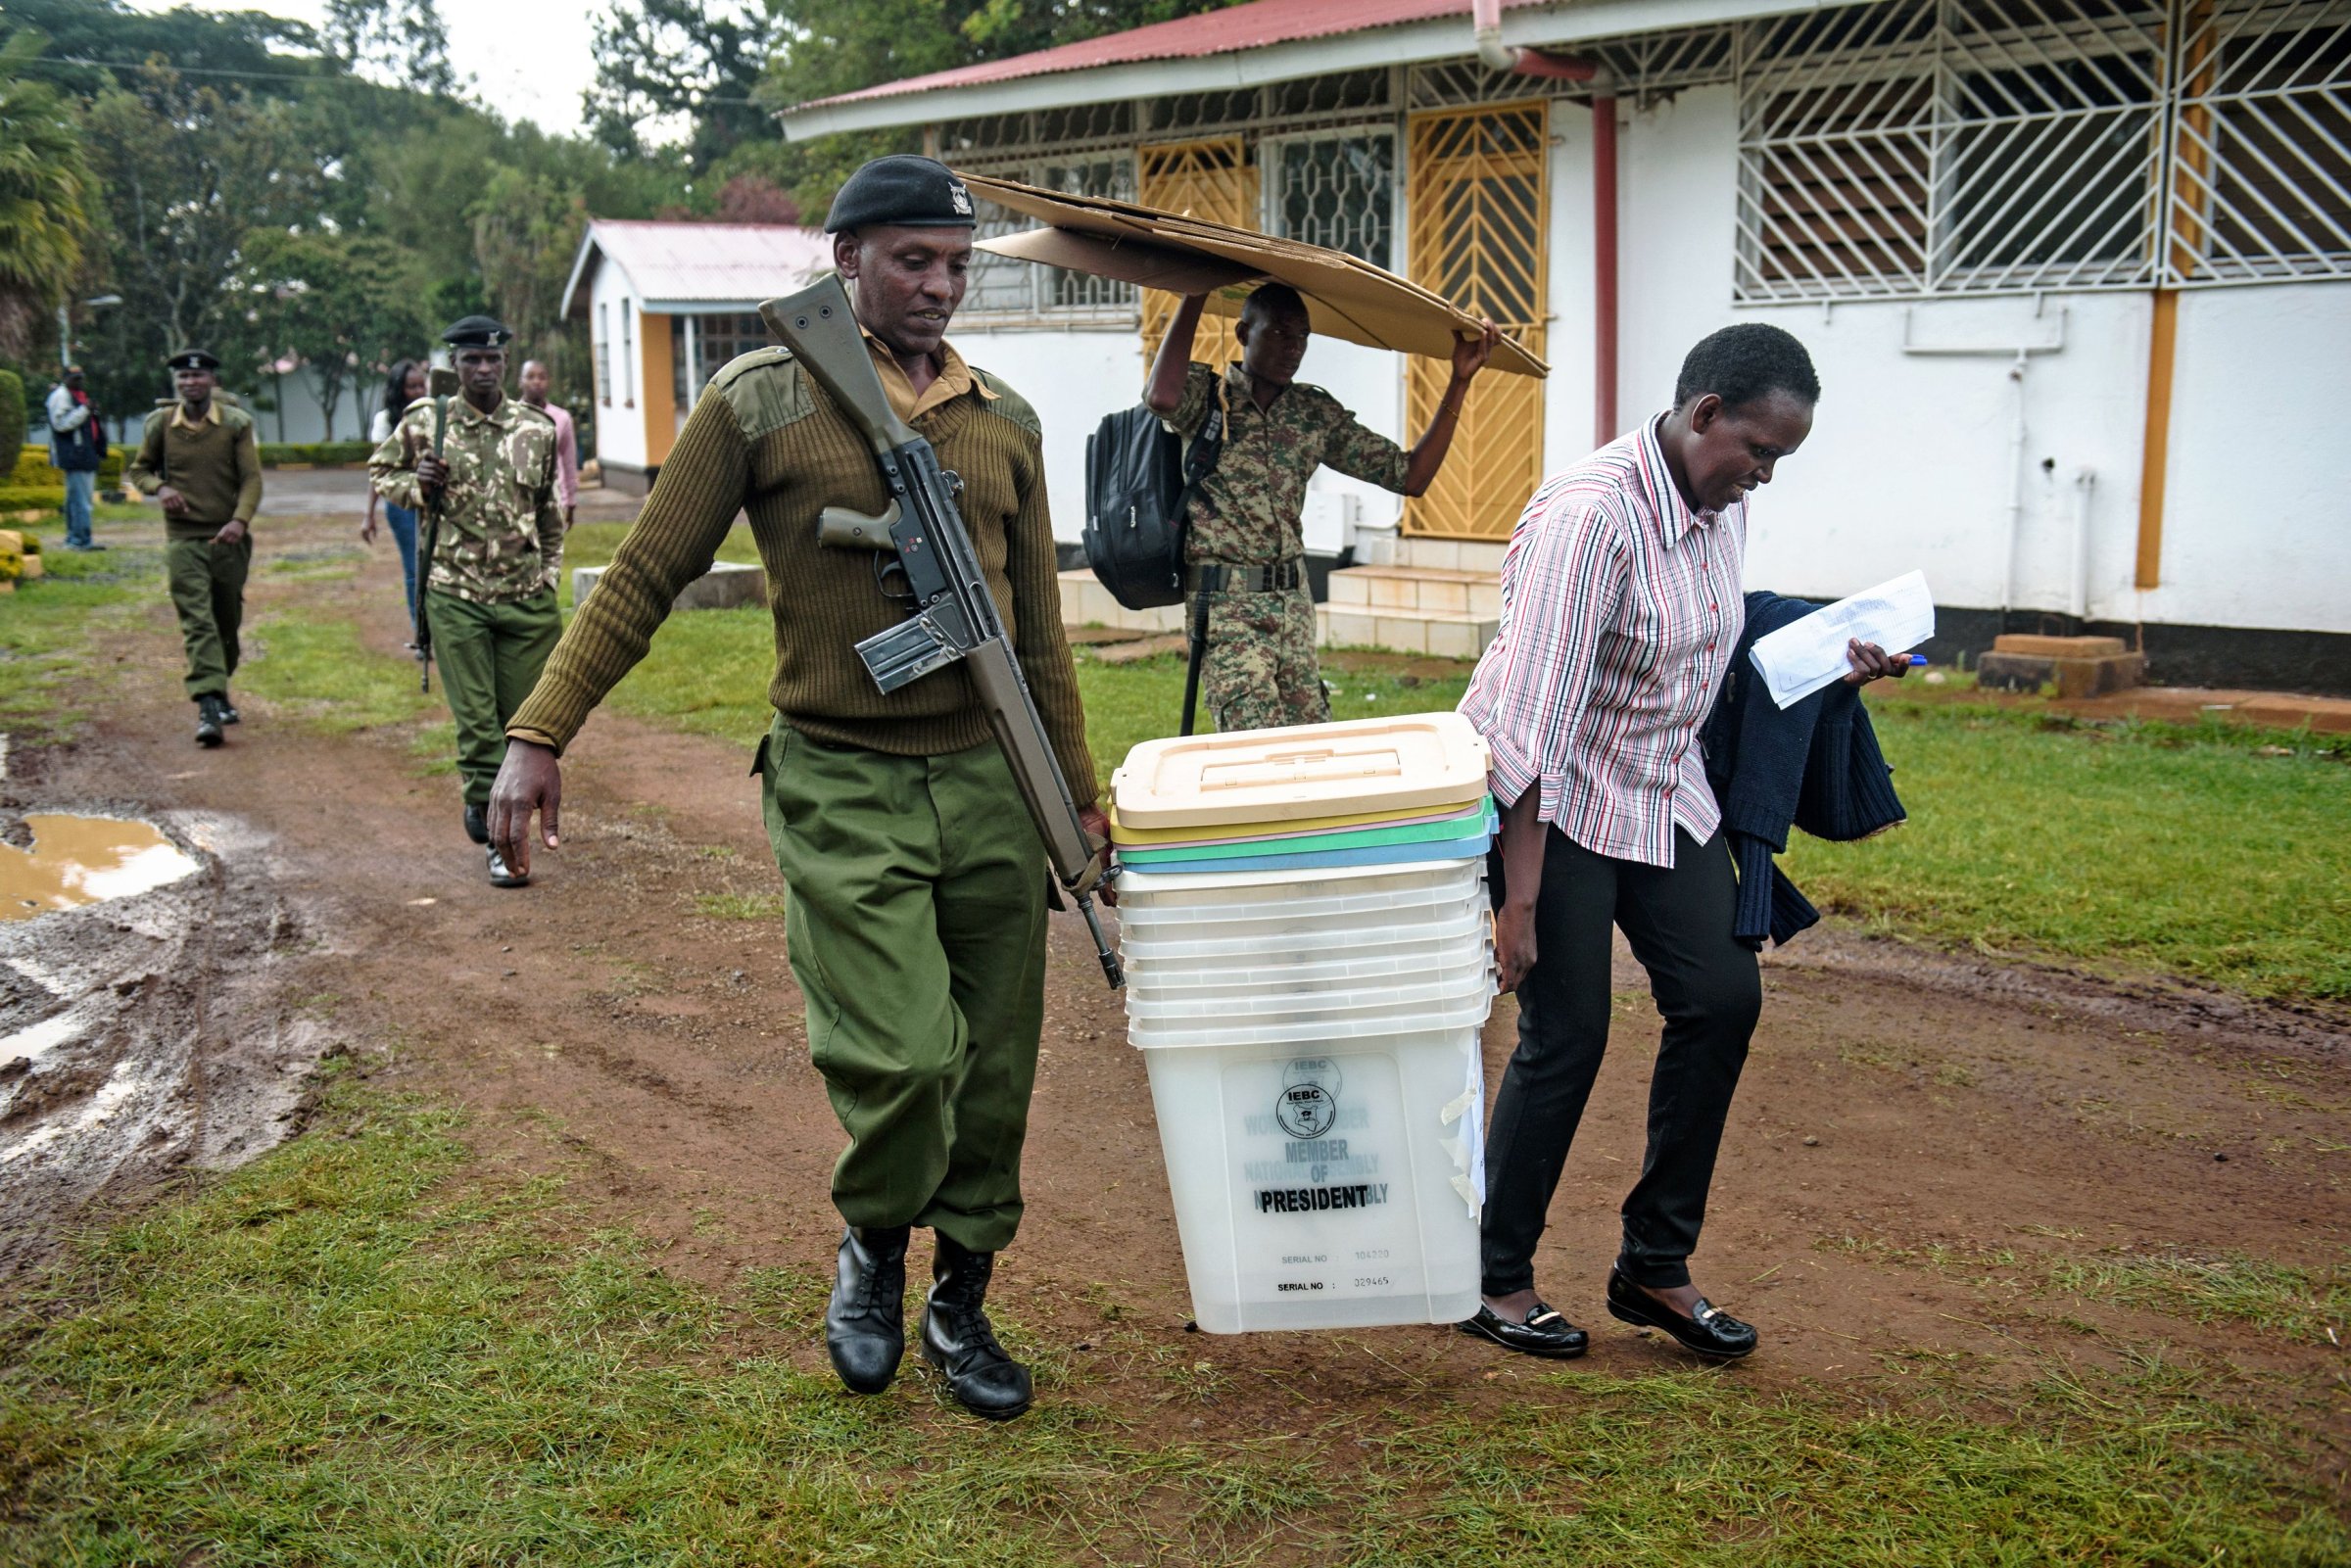 KENYA-POLITICS-VOTE